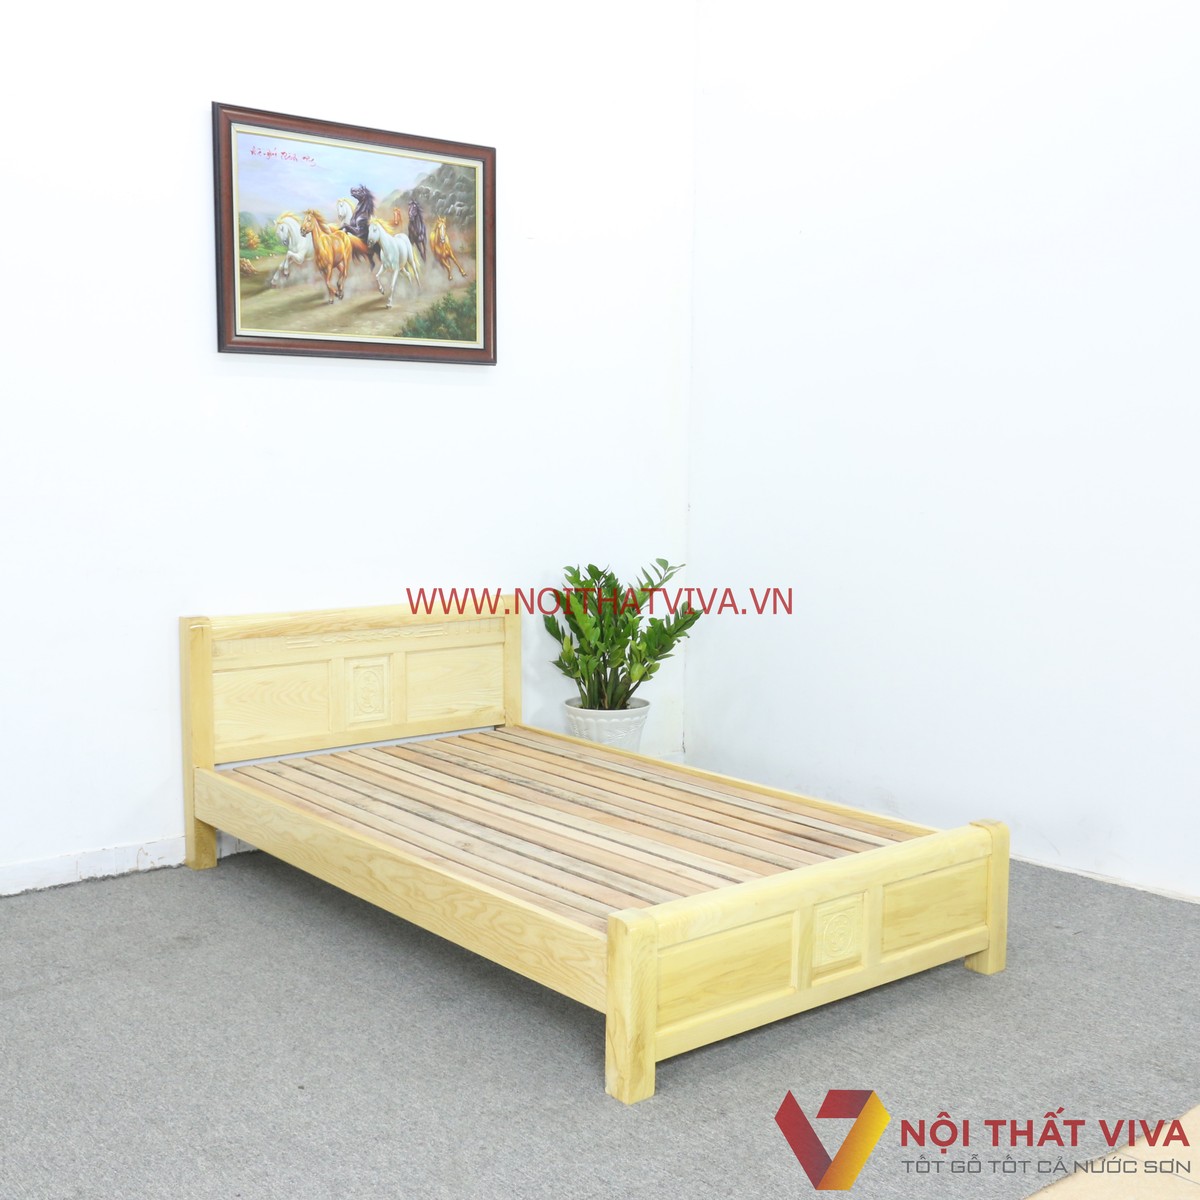 Điểm tô cho căn phòng của bạn với giường ngủ gỗ sồi Nga thanh lịch và sang trọng. Với thiết kế hiện đại và chất lượng tốt, giường ngủ này sẽ mang lại được cho bạn một giấc ngủ ngon, sâu và thoải mái.